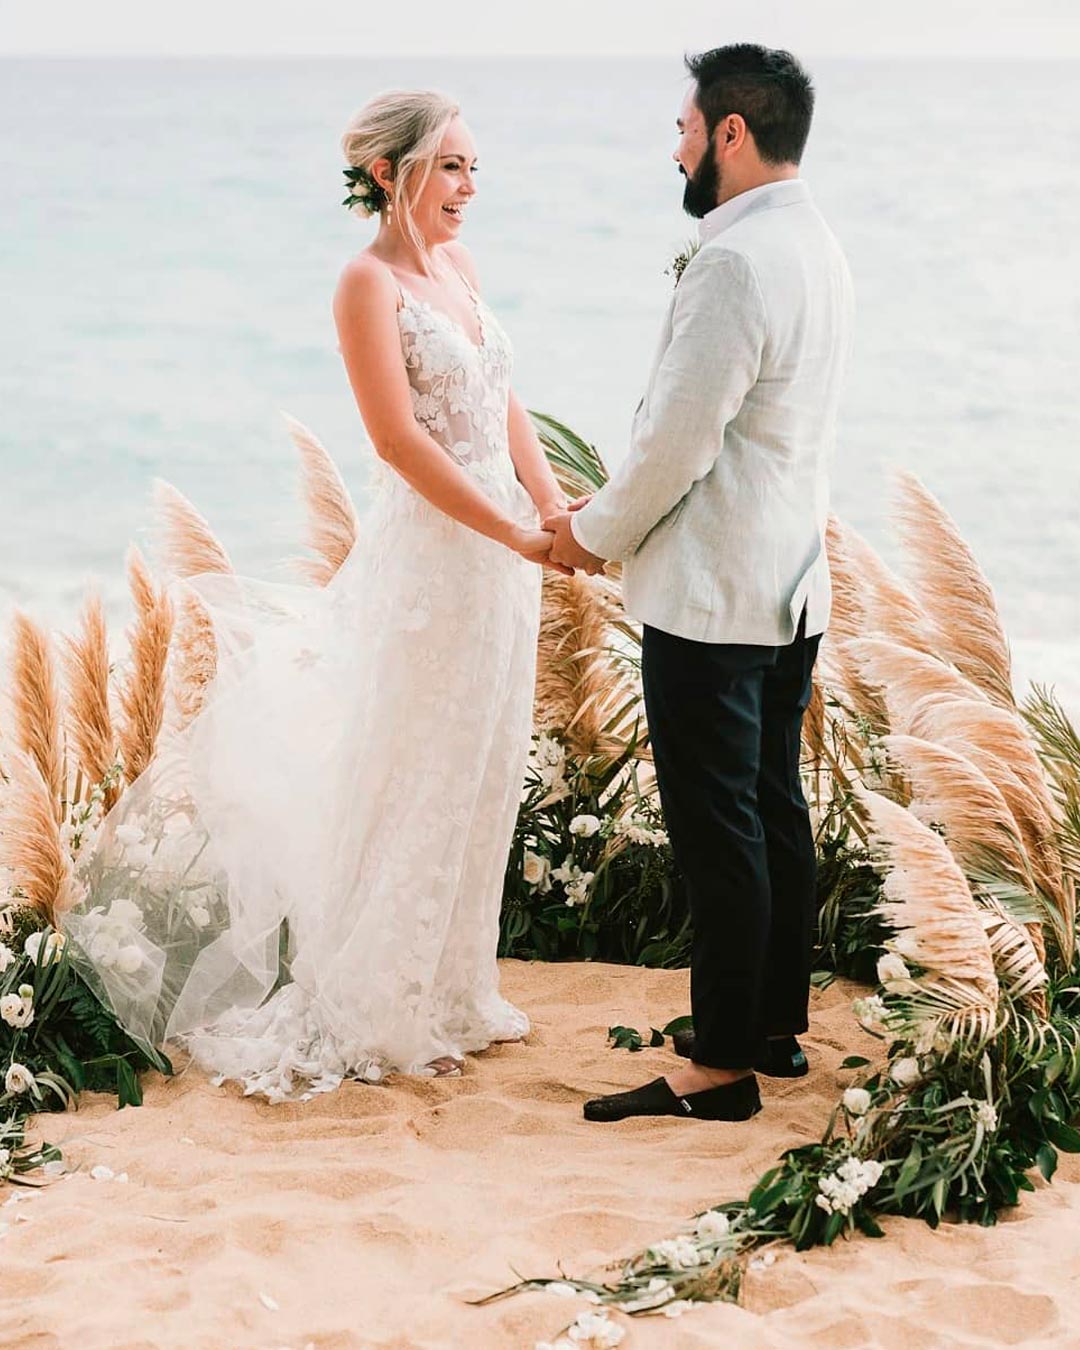 wedding vows examples beach couple